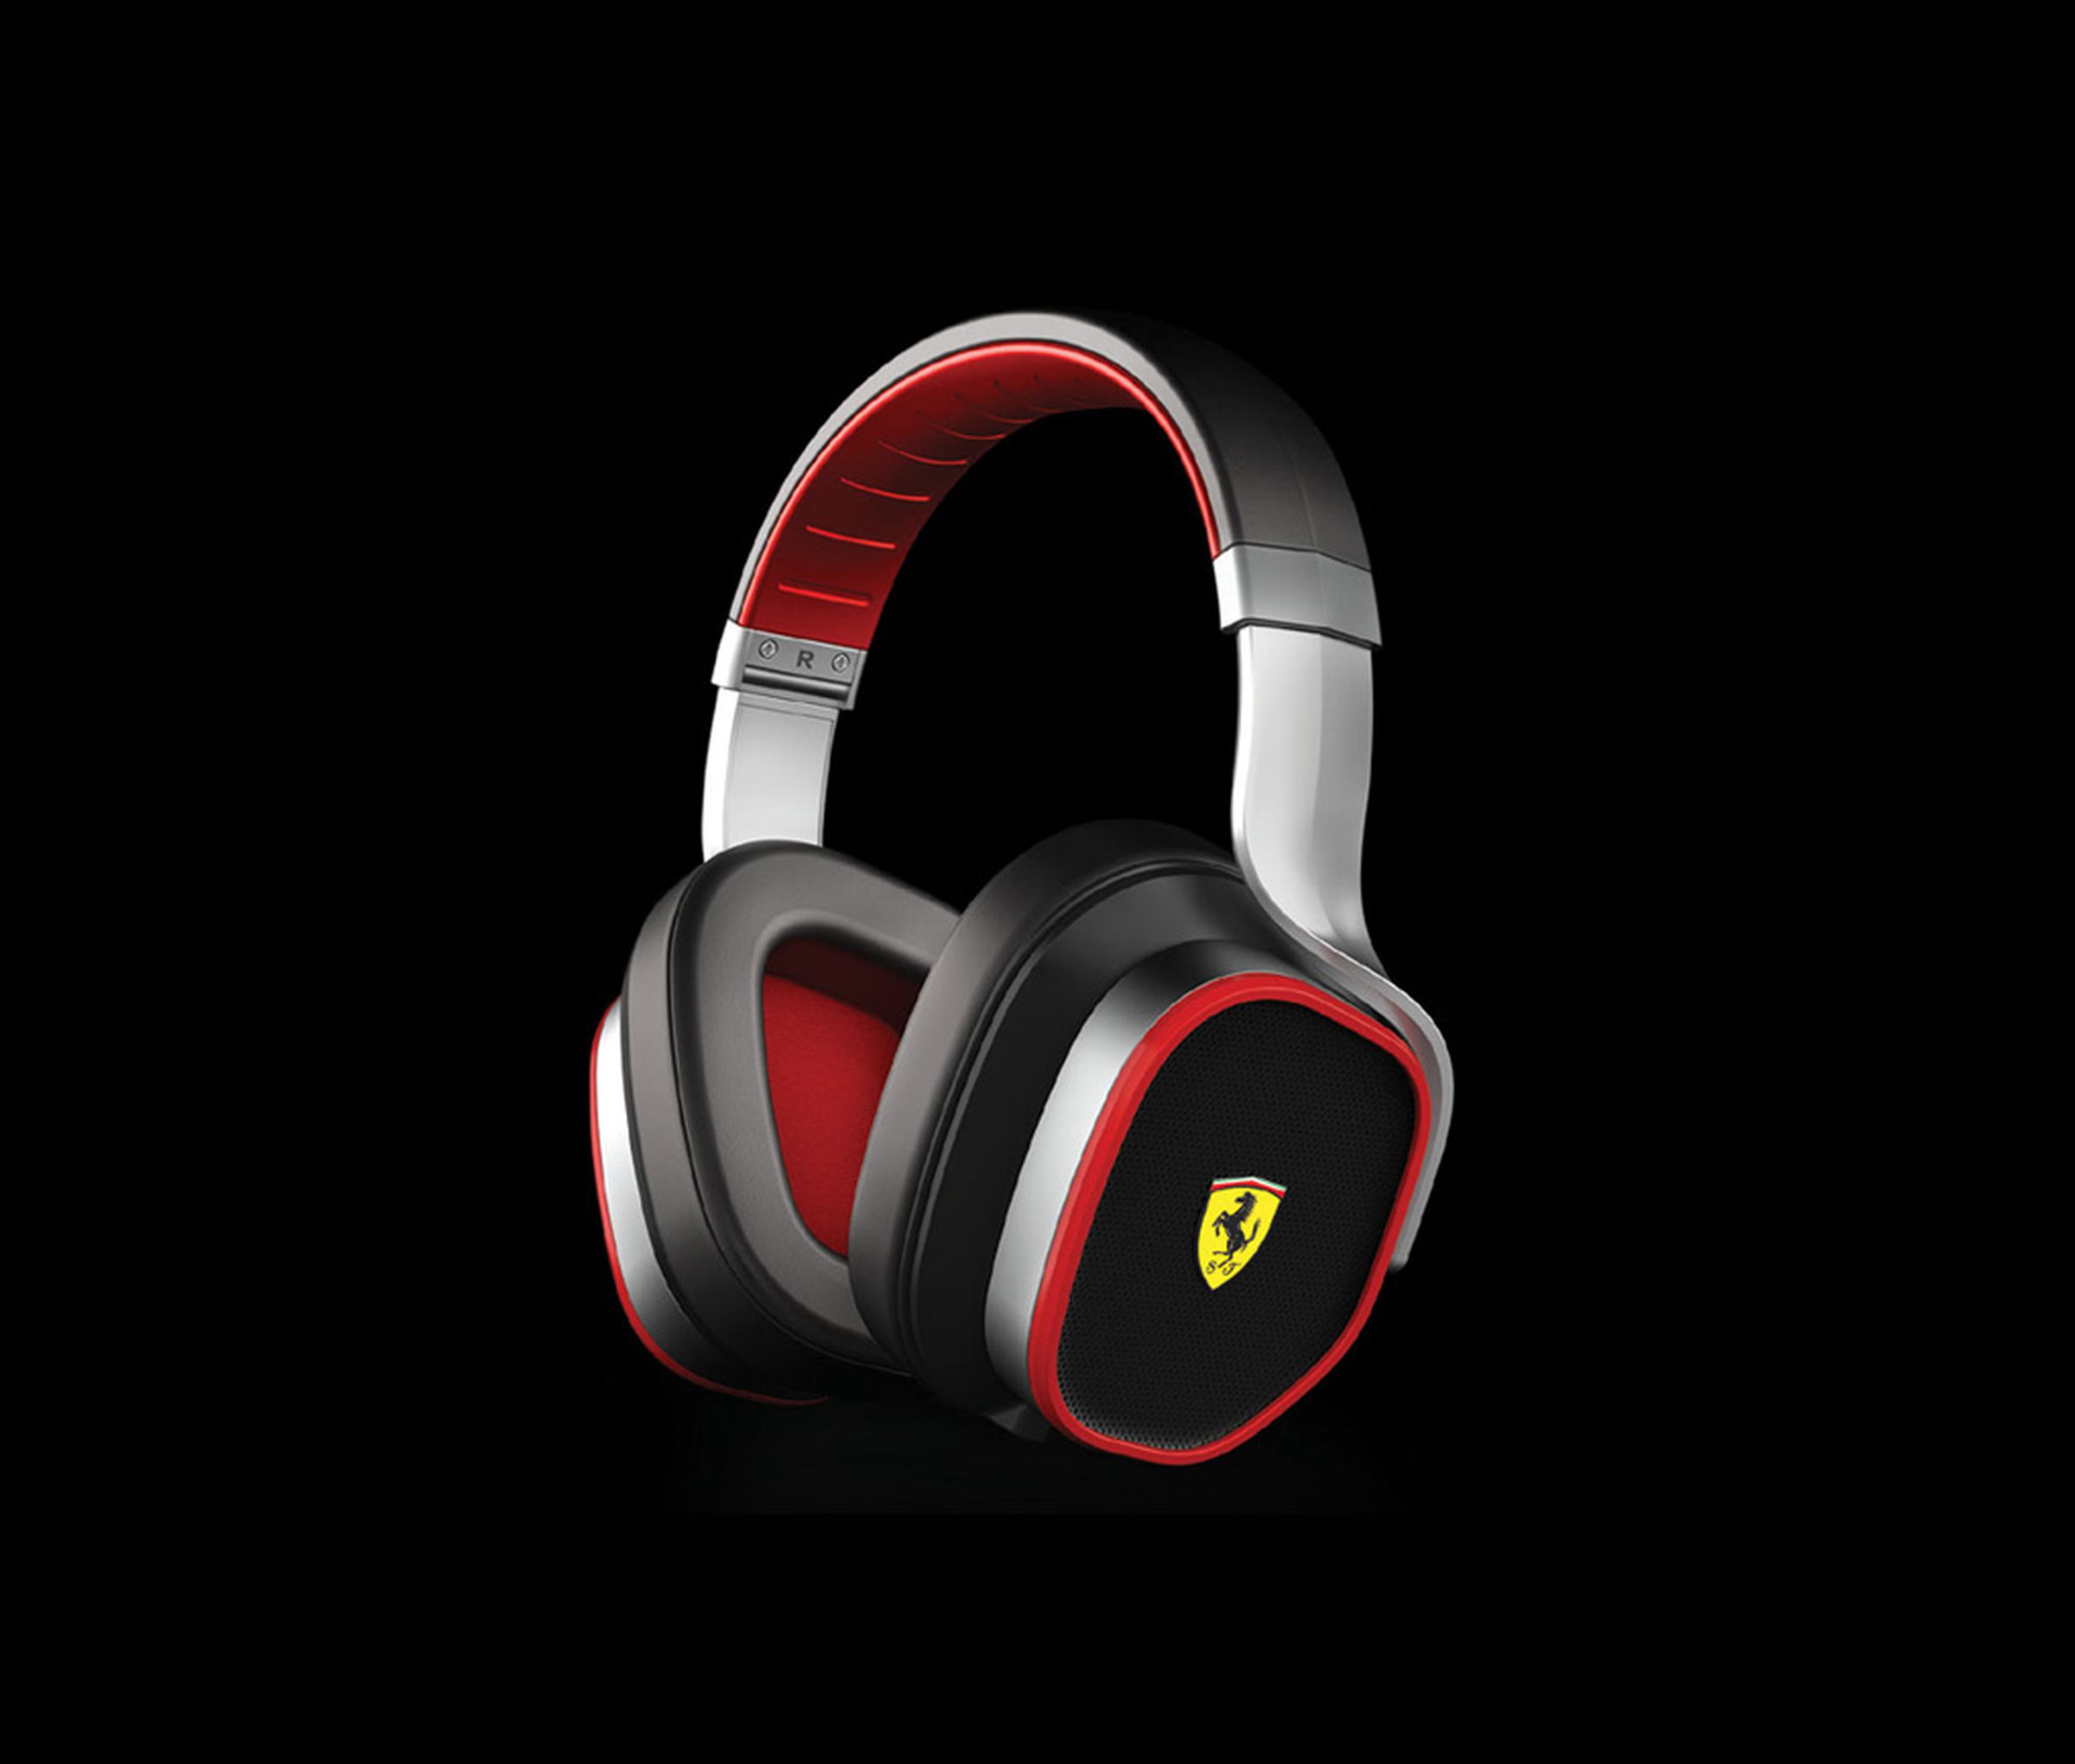 Logic3's Ferrari Scuderia and Cavallino headphones, speaker docks